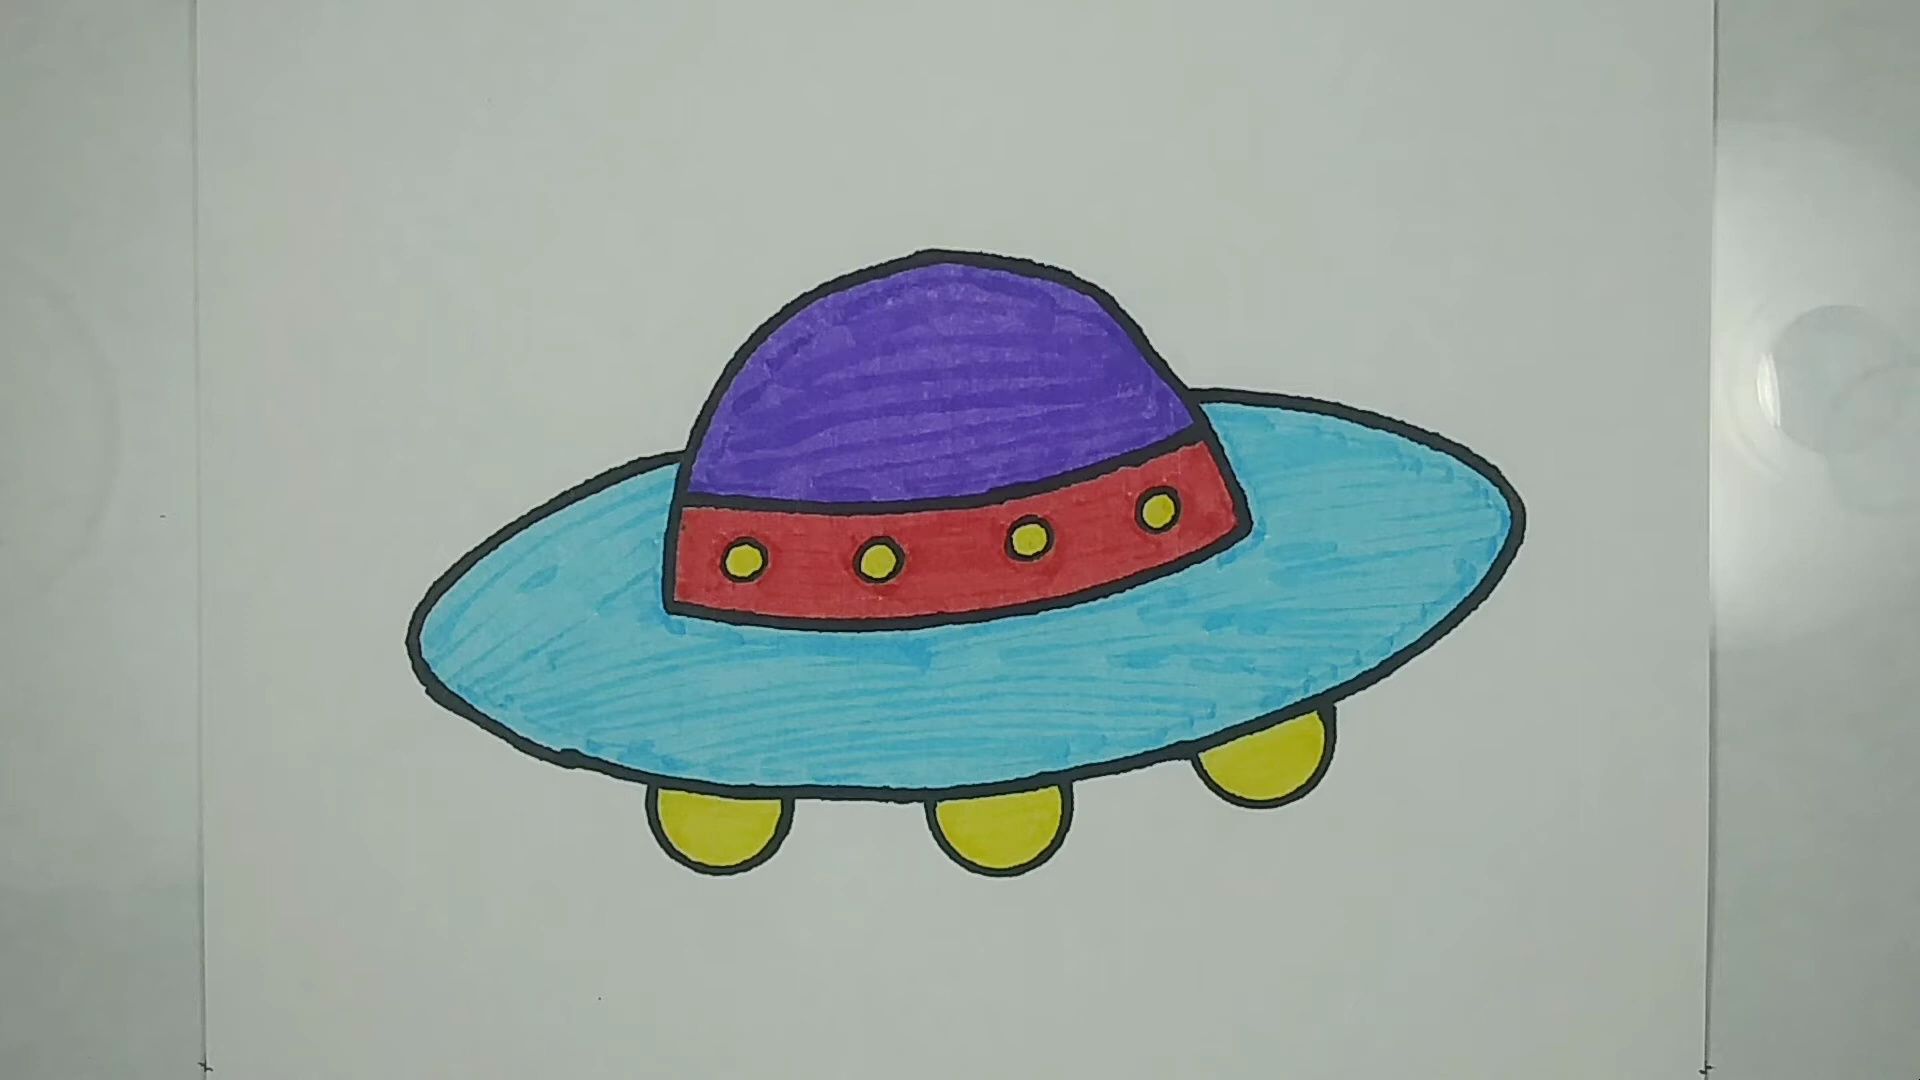 【儿童绘画】简笔画教程:今天教大家如何画一个神秘的飞碟